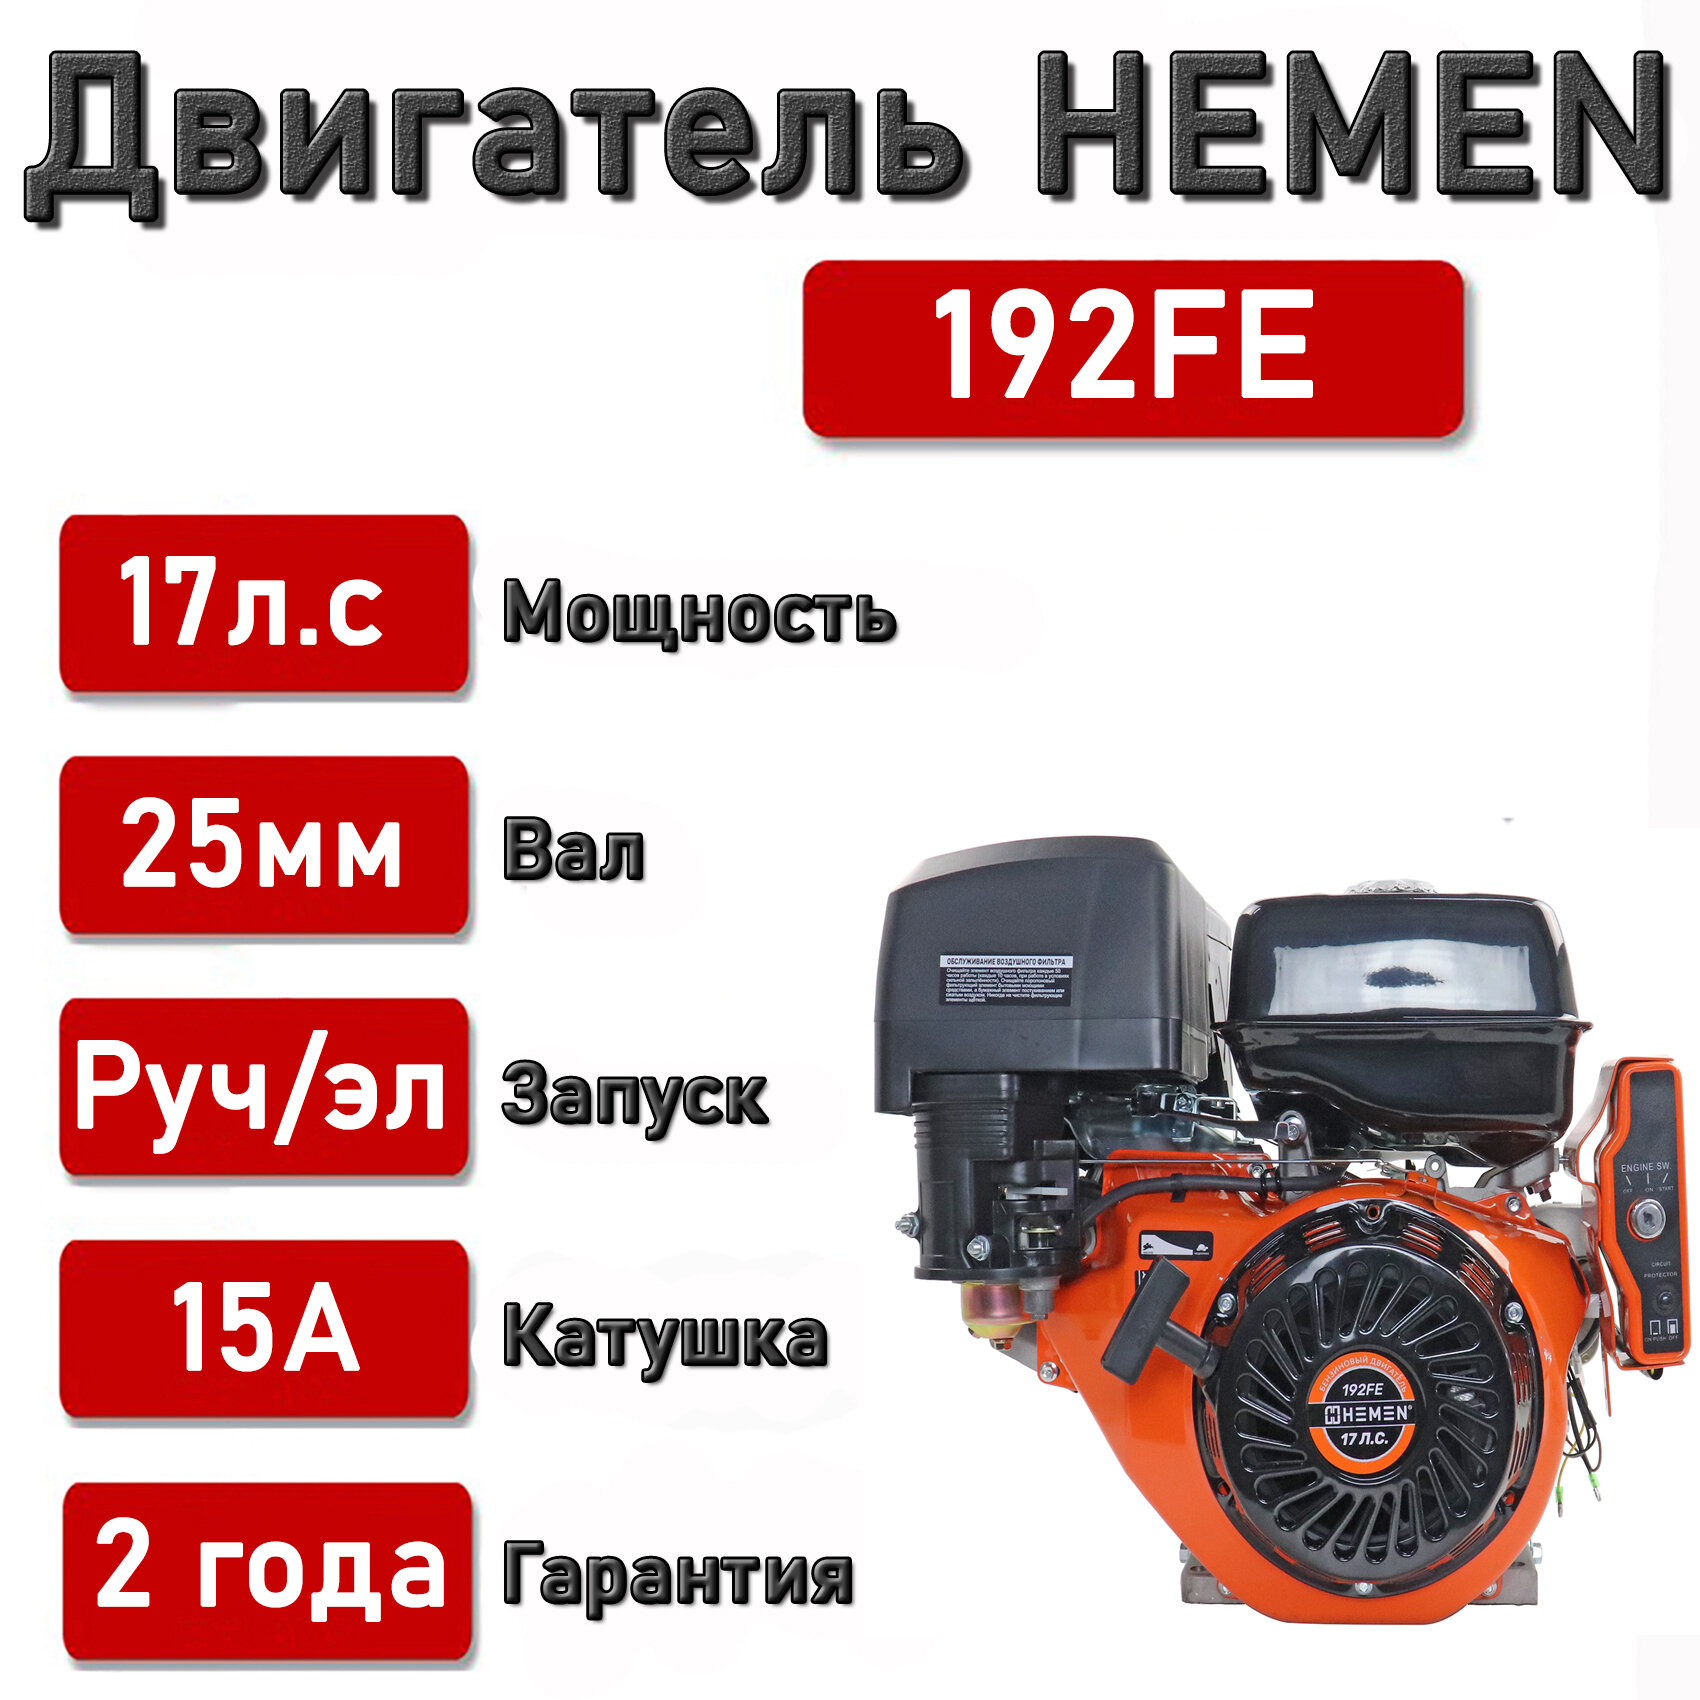 Двигатель HEMEN 17,0 л. с. с катушкой 15А180Вт 192FE (445 см3) электростартер, вал 25 мм